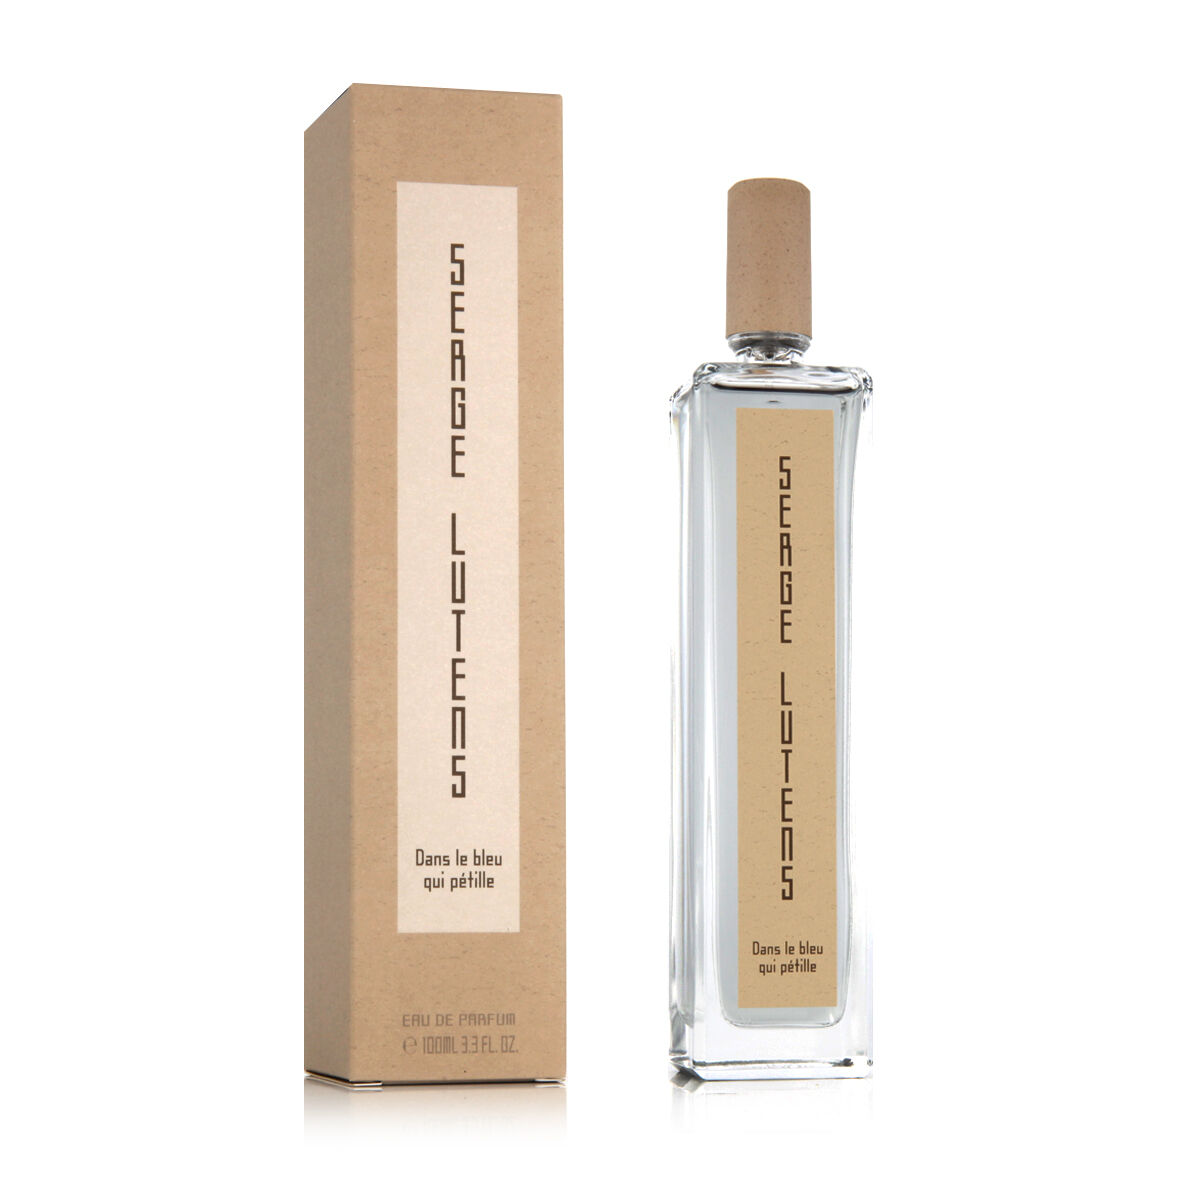 Bleu De Chanel Chanel Parfum150ml Perfume para Hombre - Tienda Abierta